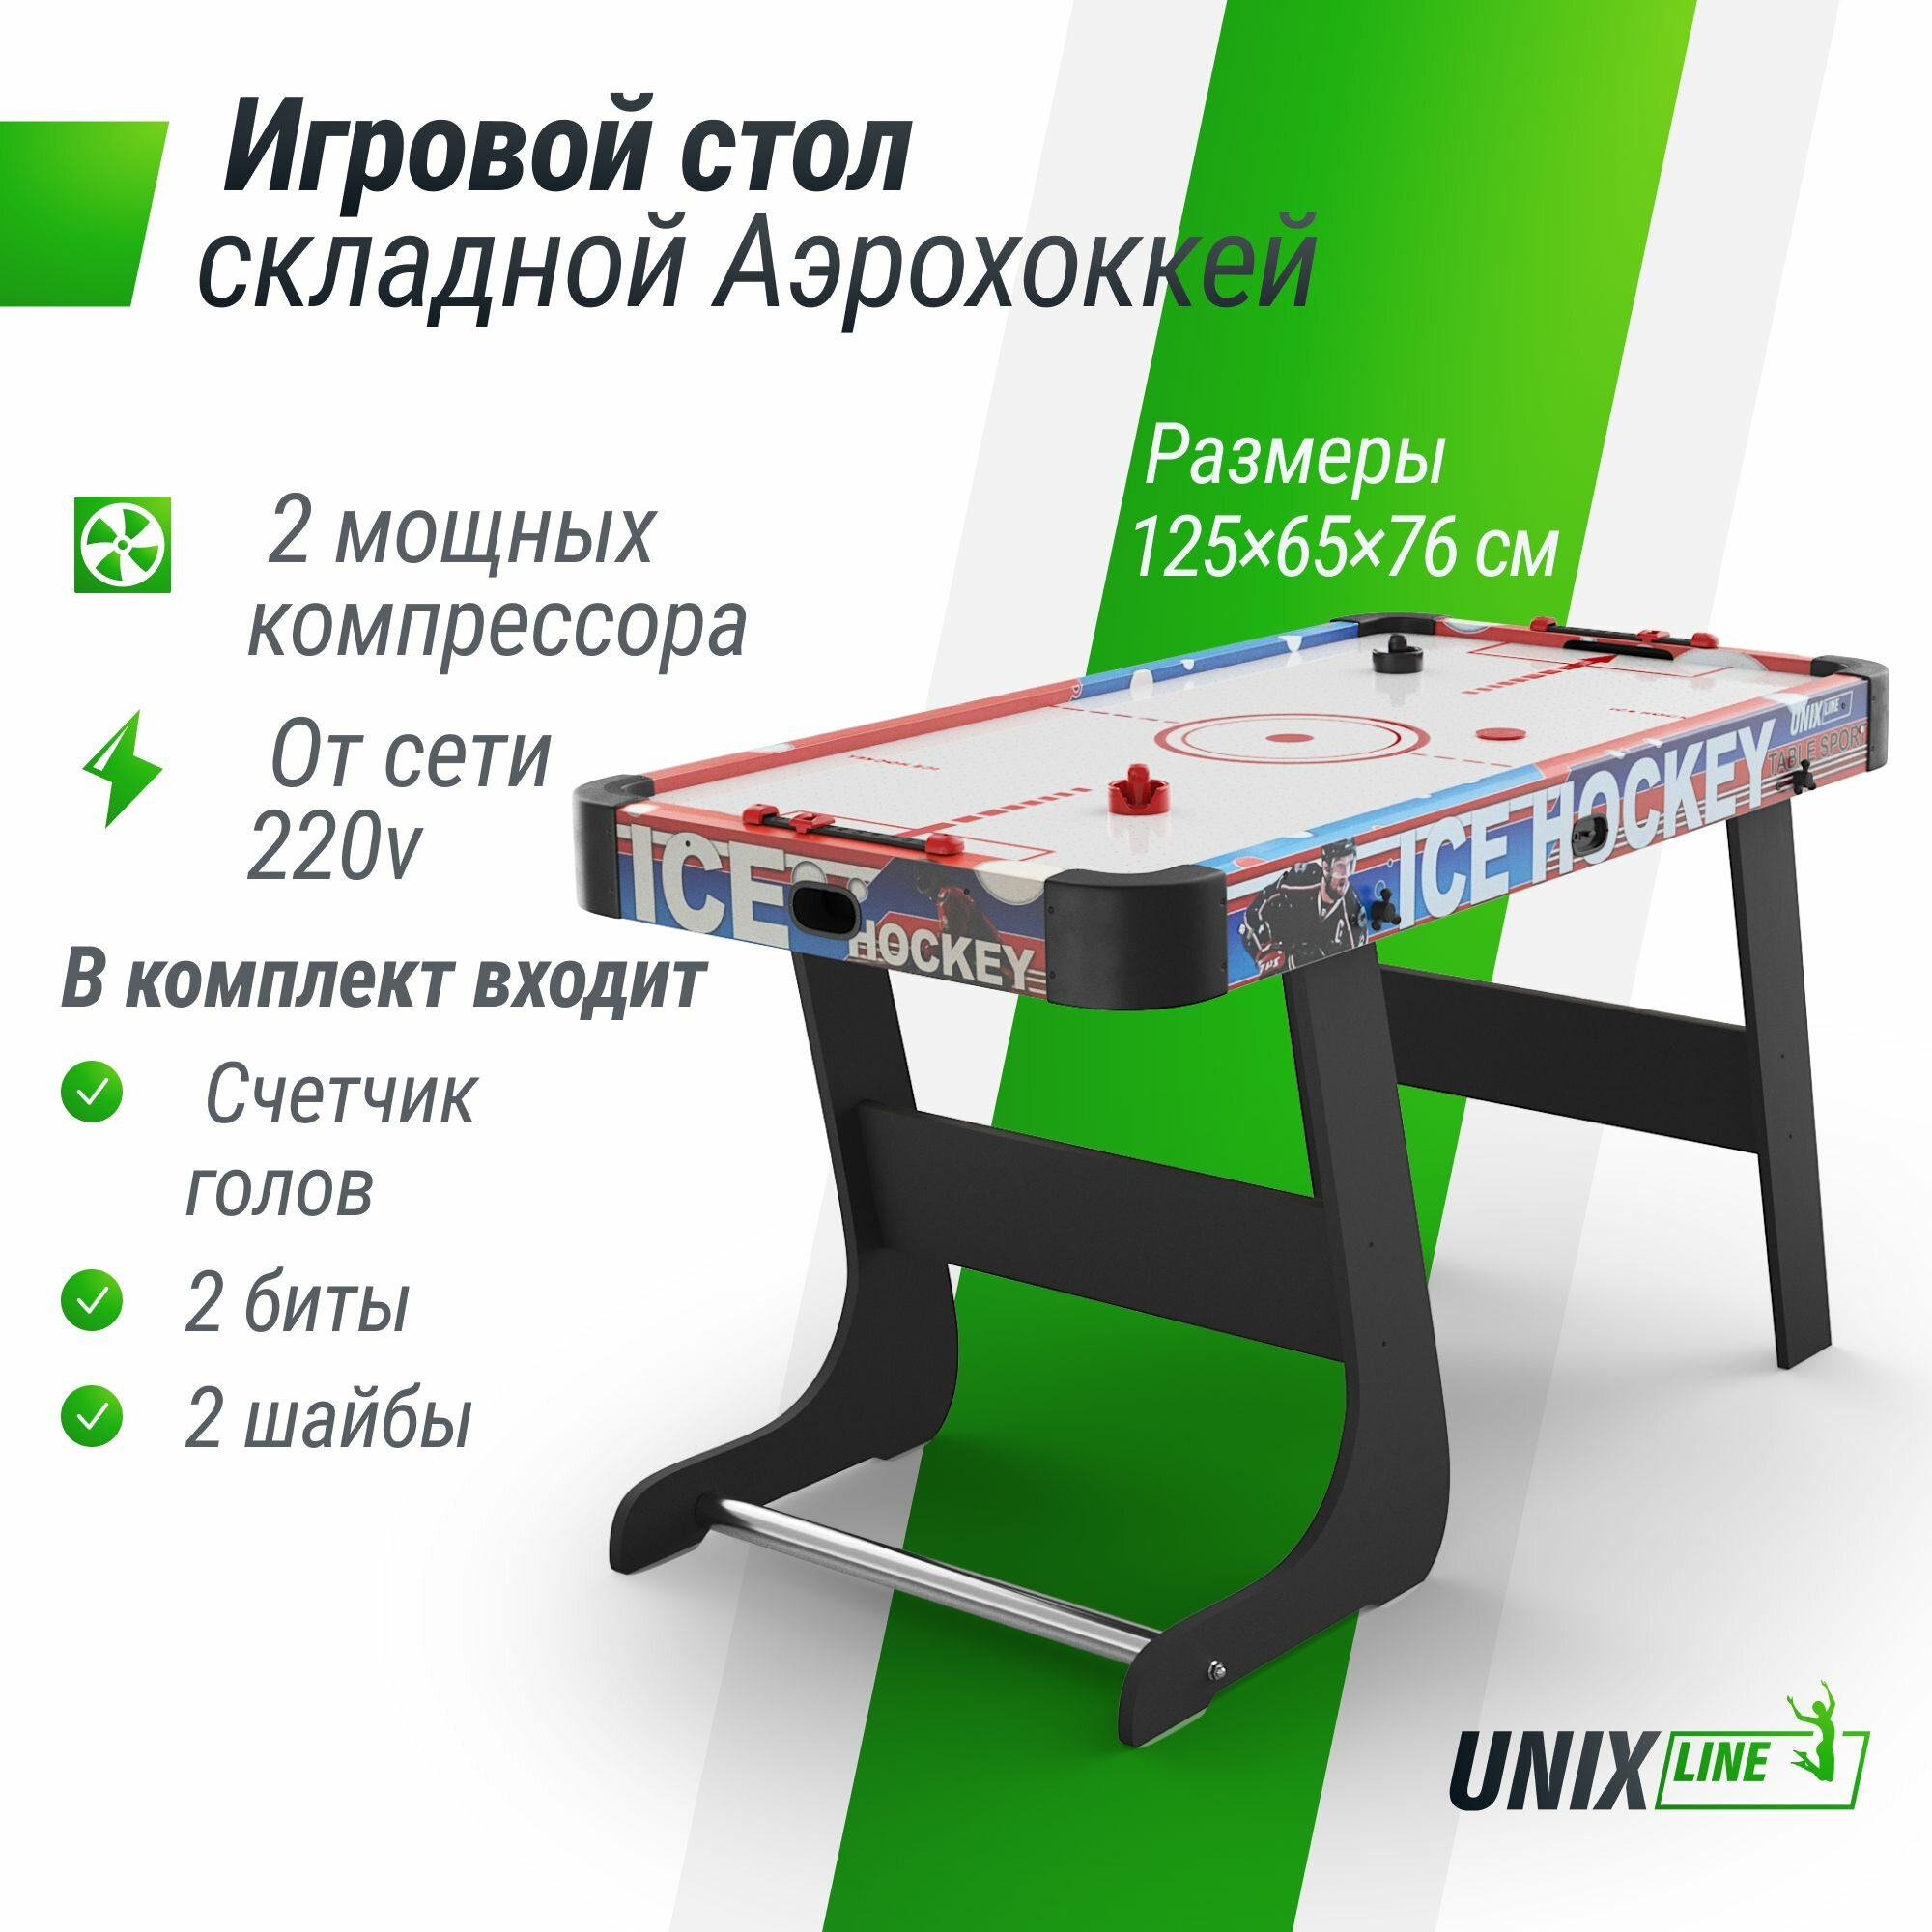 Игровой стол складной UNIX Line Аэрохоккей 125х65 cм, большой напольный, от сети 220В UNIXLINE